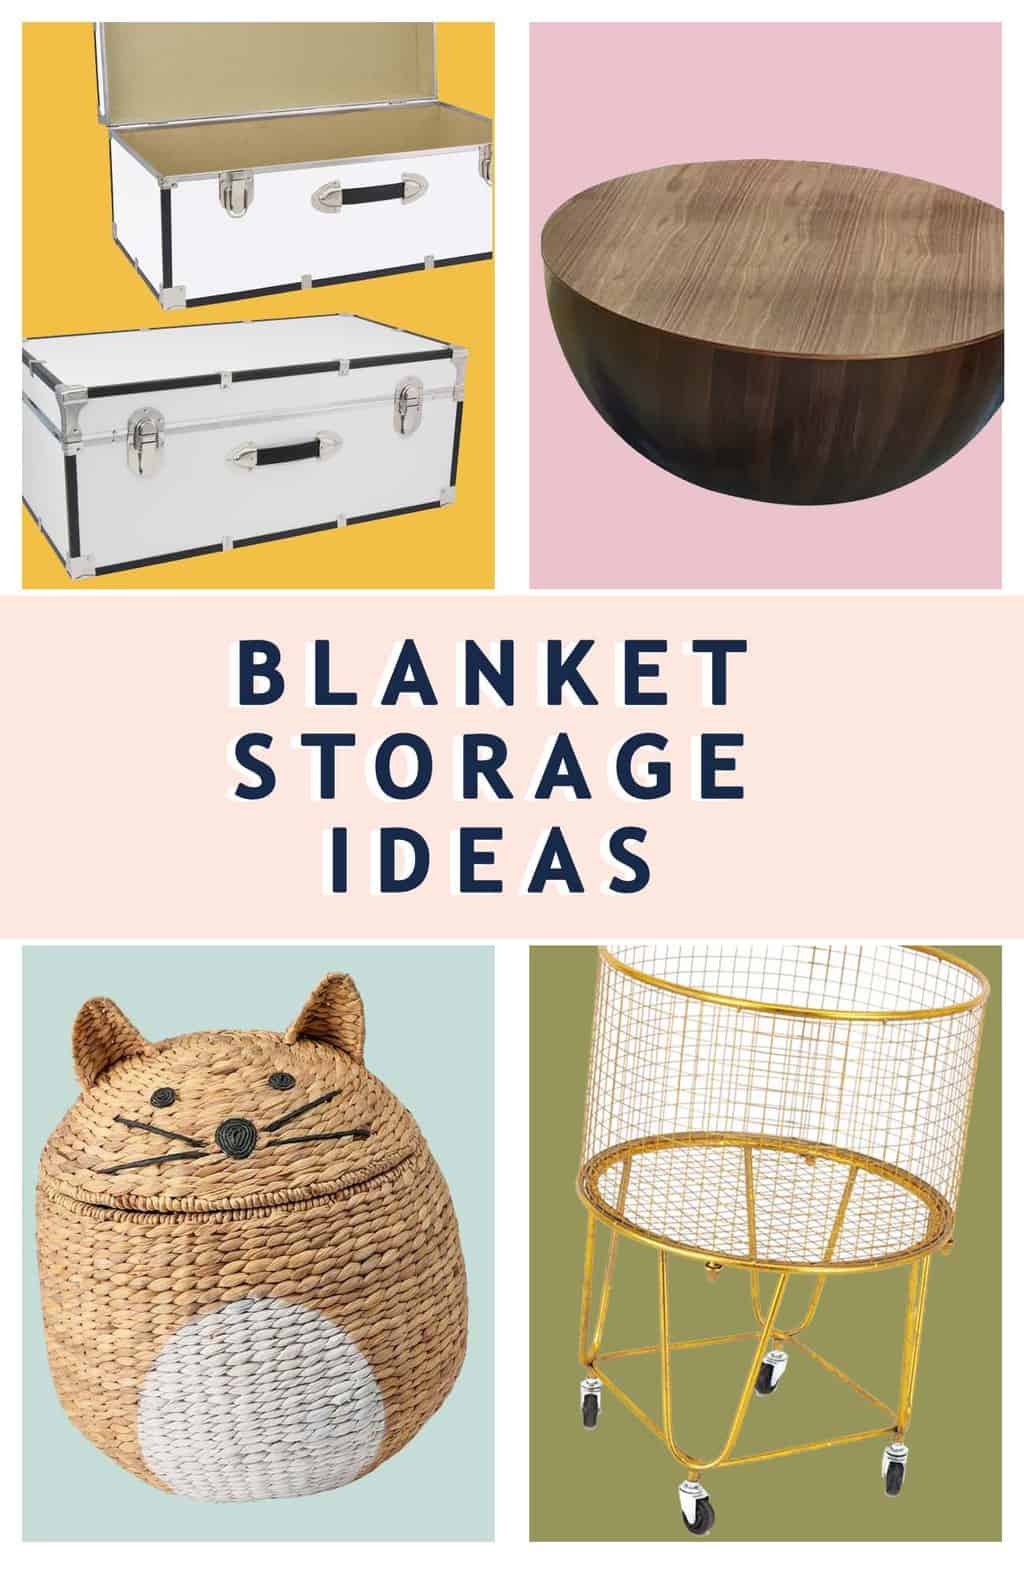 Blanket Storage Ideas by Sugar & Cloth